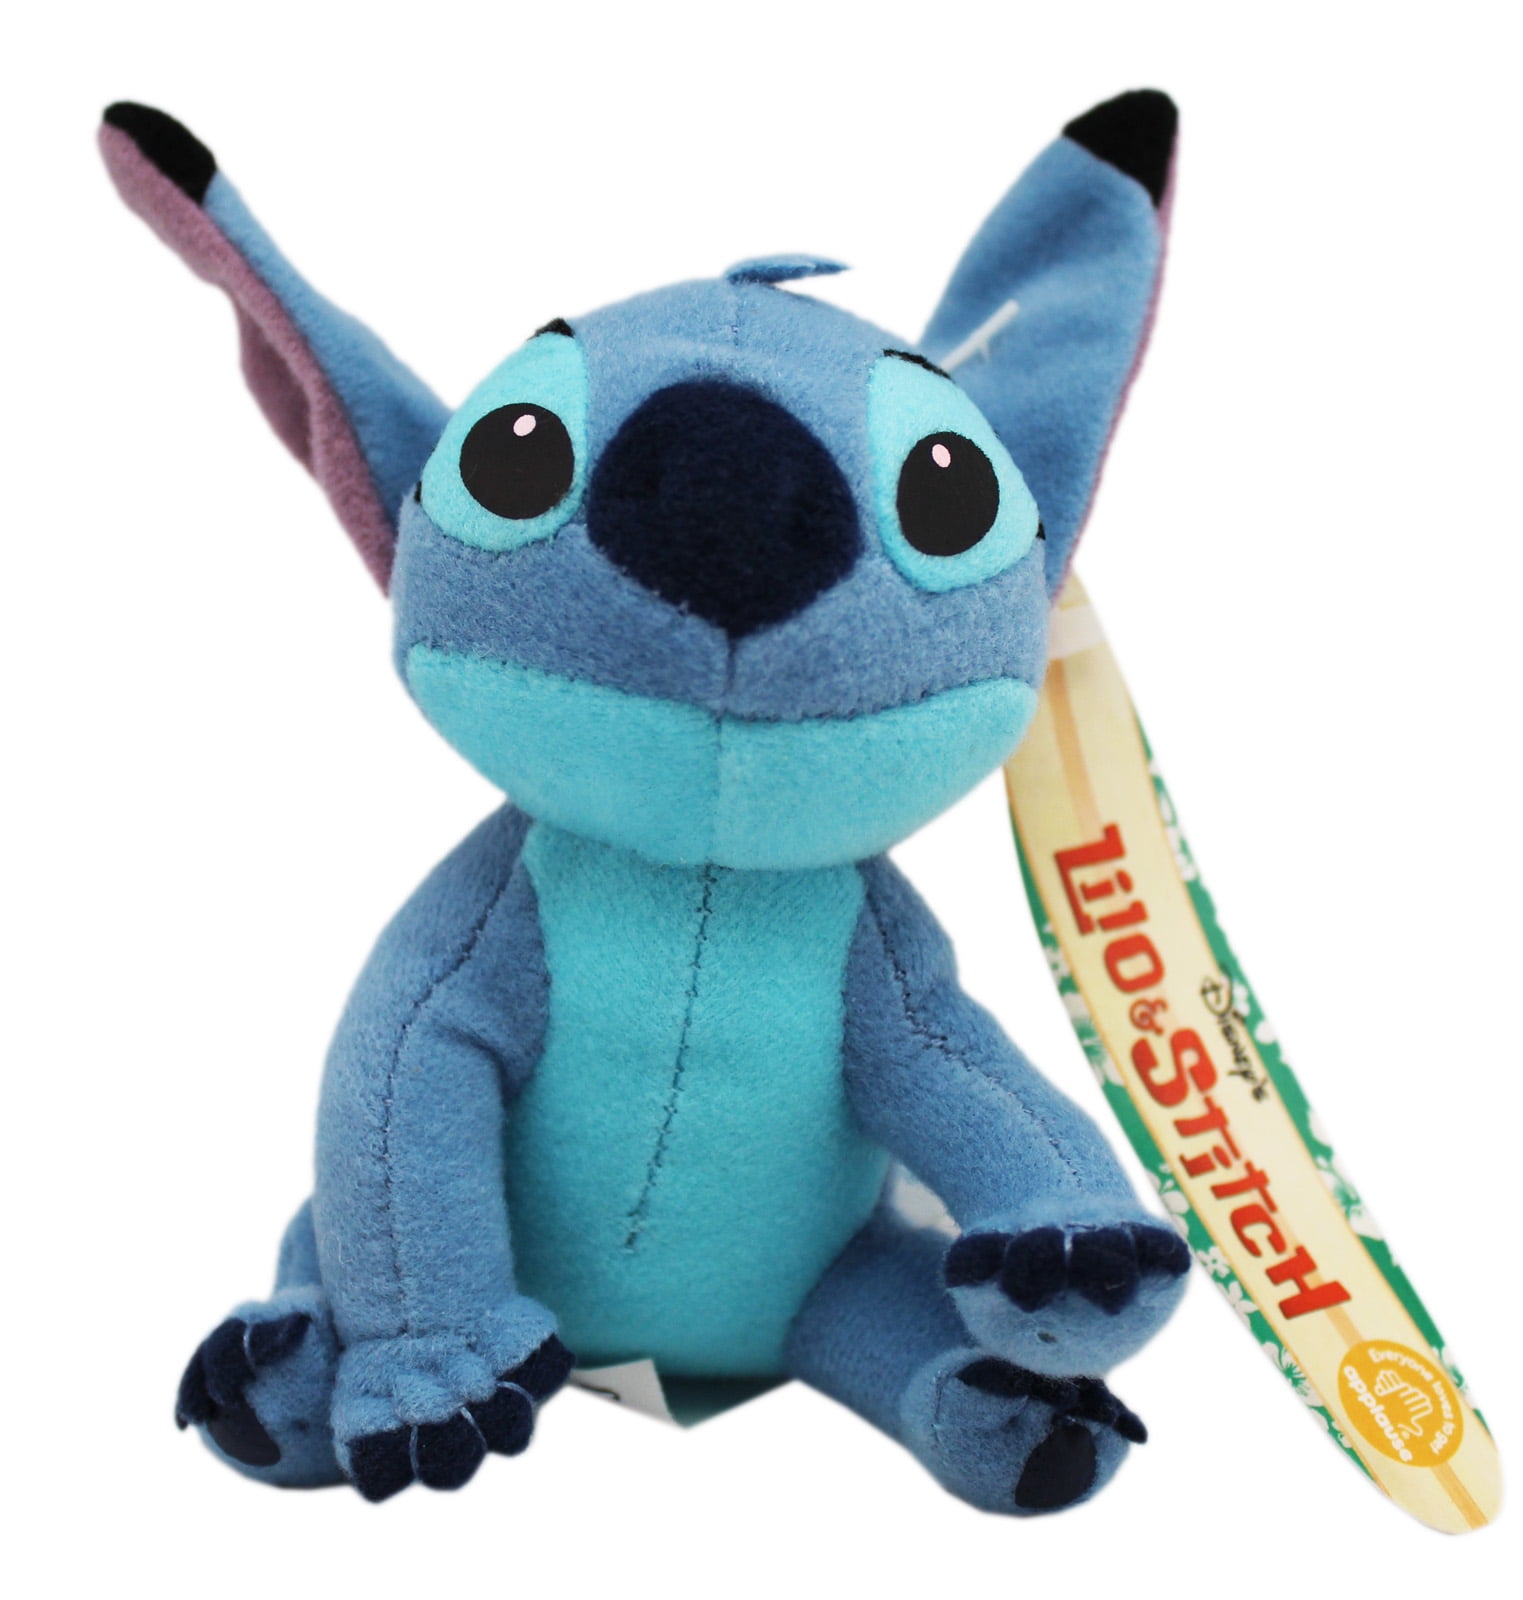 Disney Lilo & Stitch 11 inch Plush Toy for sale online 